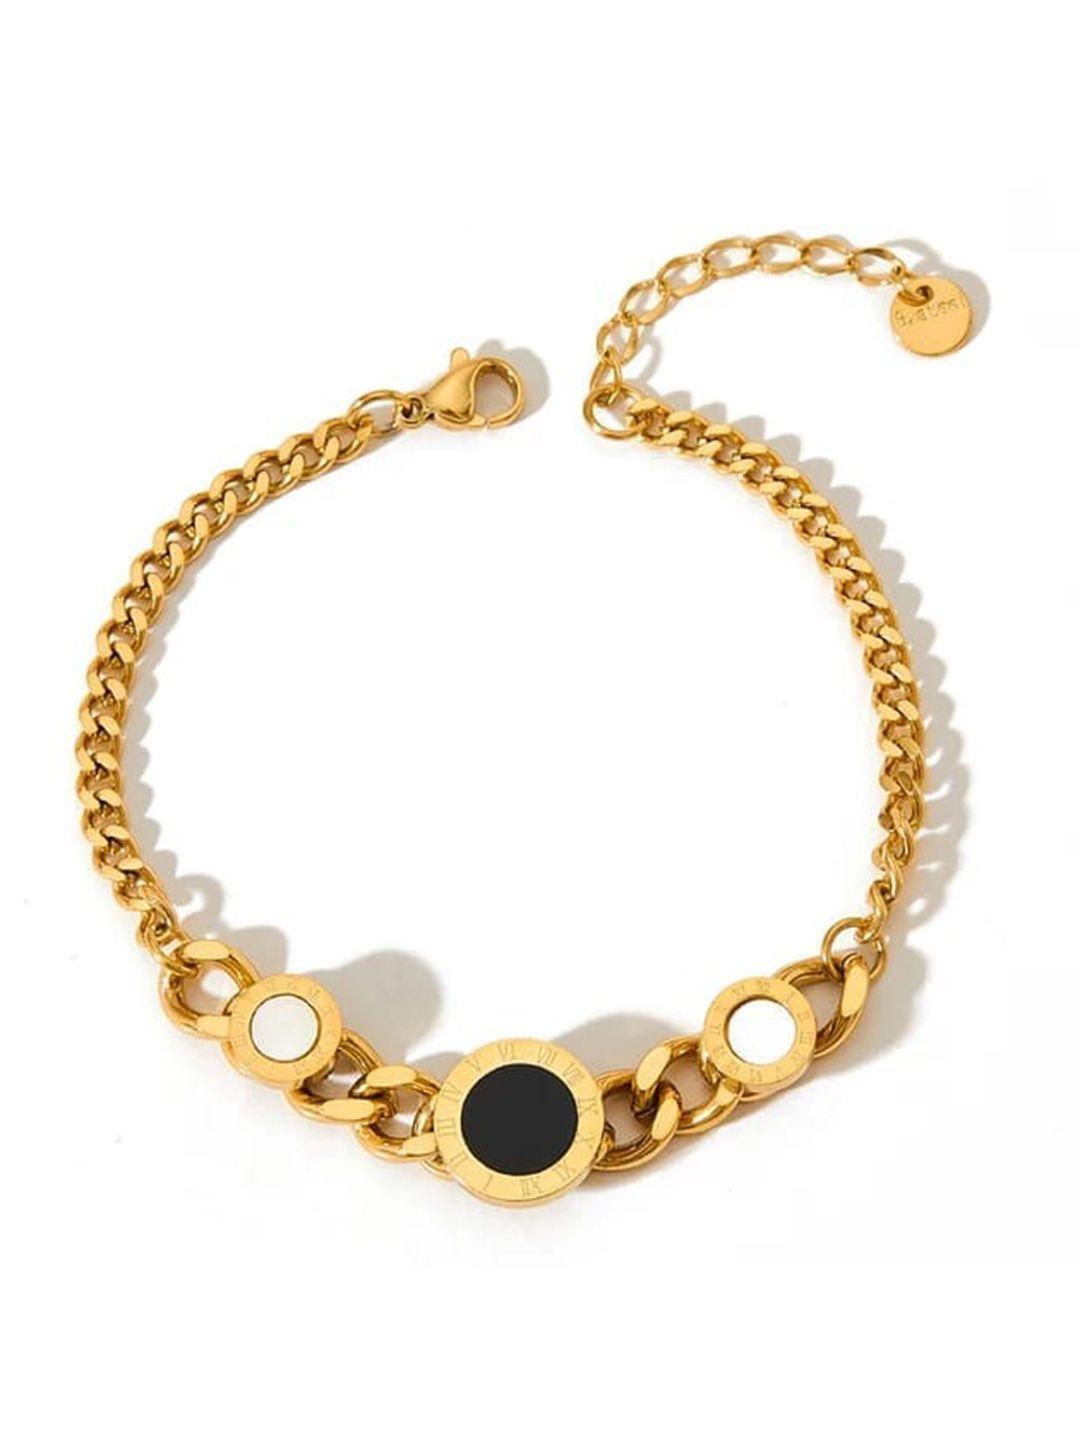 krystalz women gold-plated stainless steel link bracelet